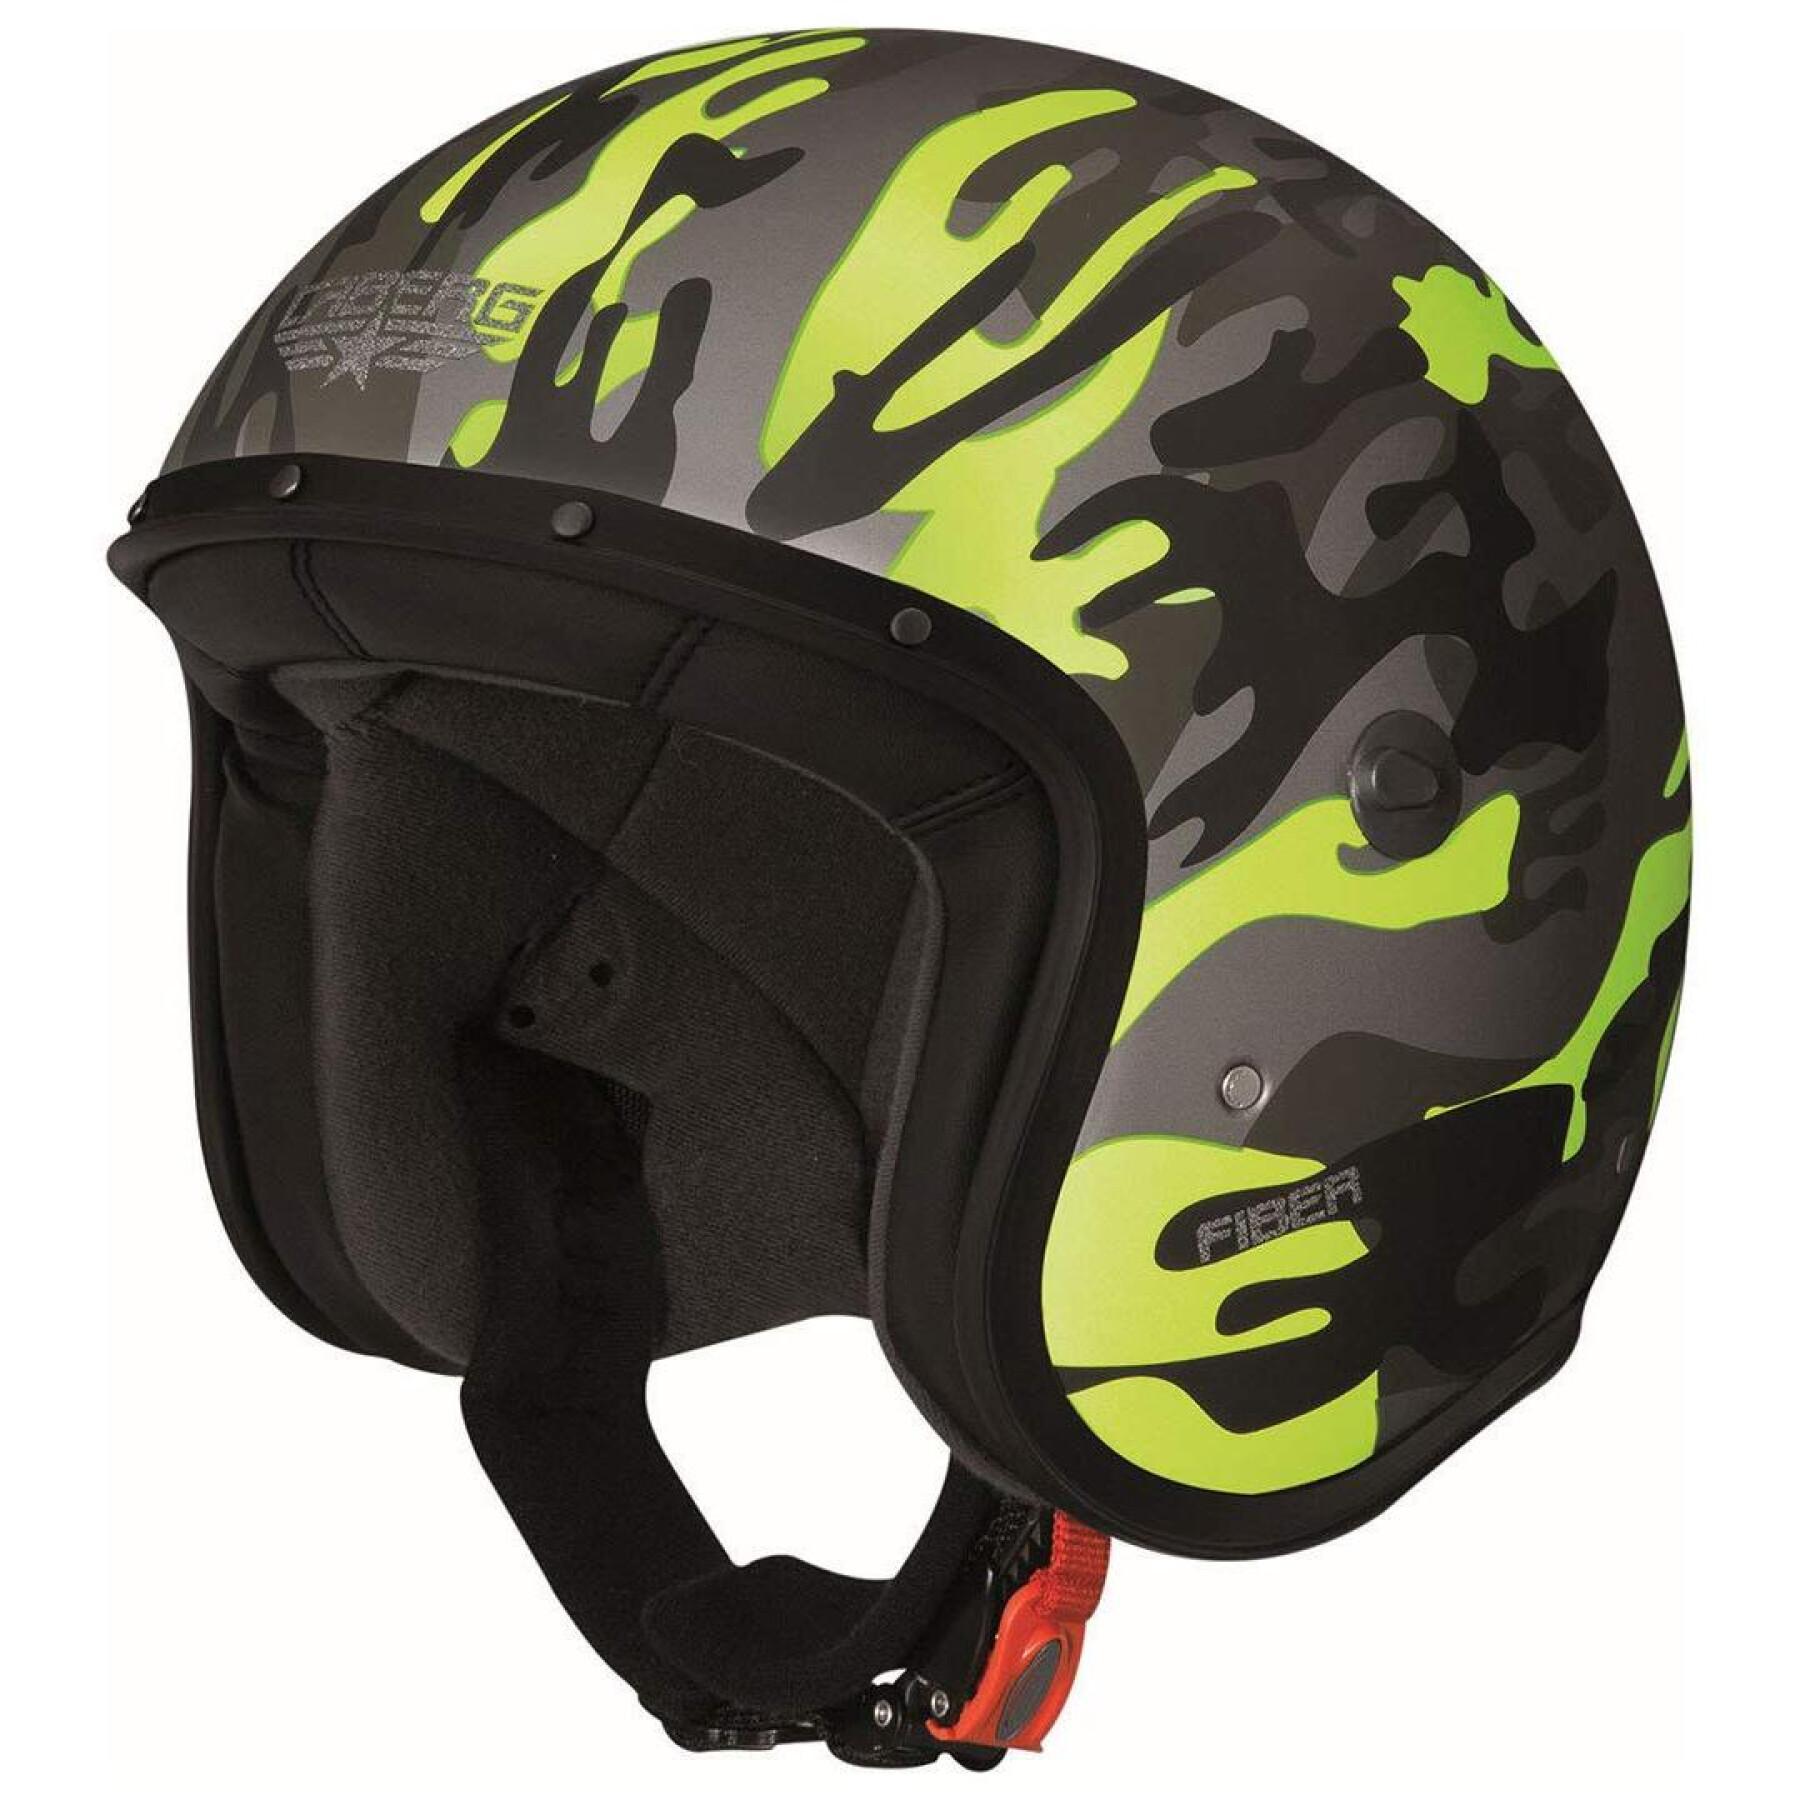 Jet motorcycle helmet Caberg freeride commander camouflage